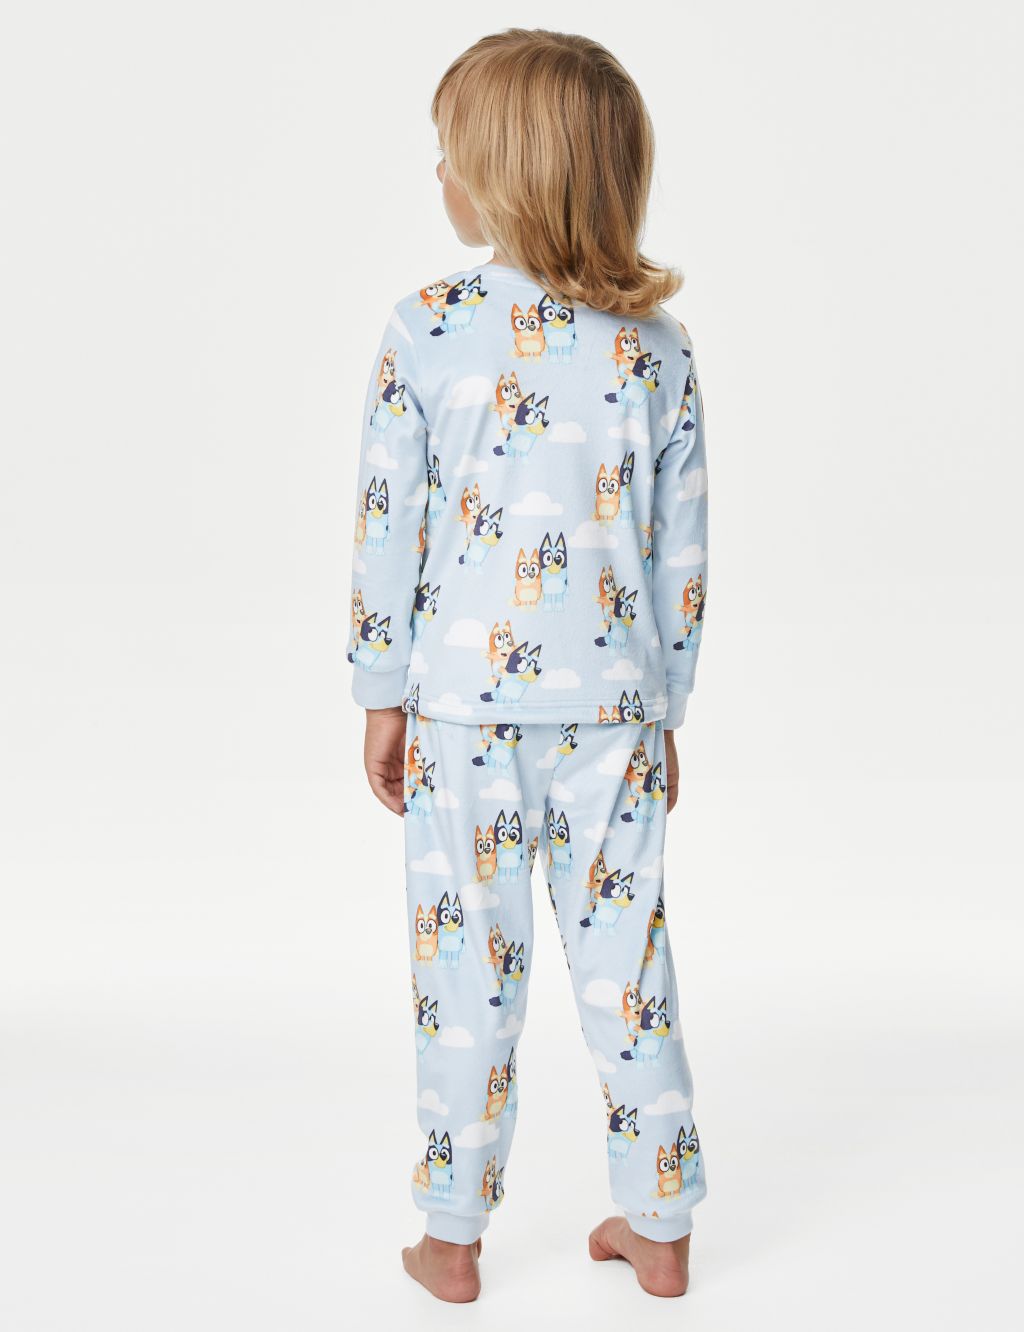 Bluey™ Velour Pyjamas (1-7 Yrs) image 3